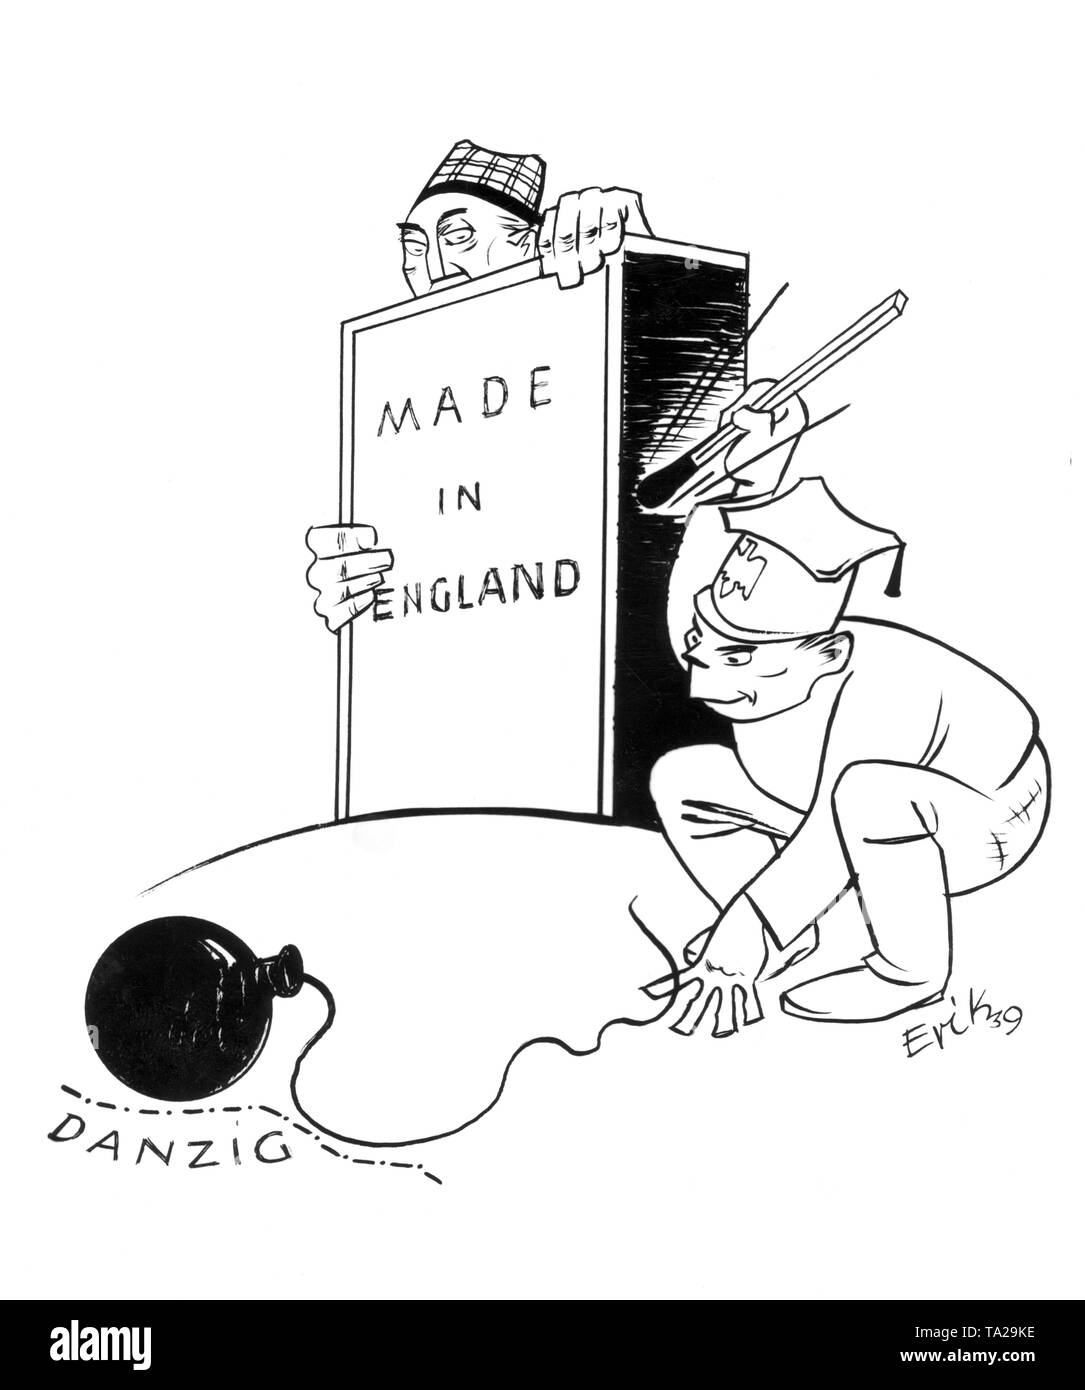 Cette caricature de propagande nazi Erik montre un pôle tentant d'allumer une bombe dans la région de Danzig avec un match d'un Anglais d'allumettes, surveillée par un Russe. Cette caricature est censée indiquer que la Pologne, sous l'influence du gouvernement soviétique, veut la pile de pont avec Danzig, avec l'appui des Britanniques, mais obtient l'extrémité courte du bâton, parce que derrière Danzig est le Reich allemand. Banque D'Images